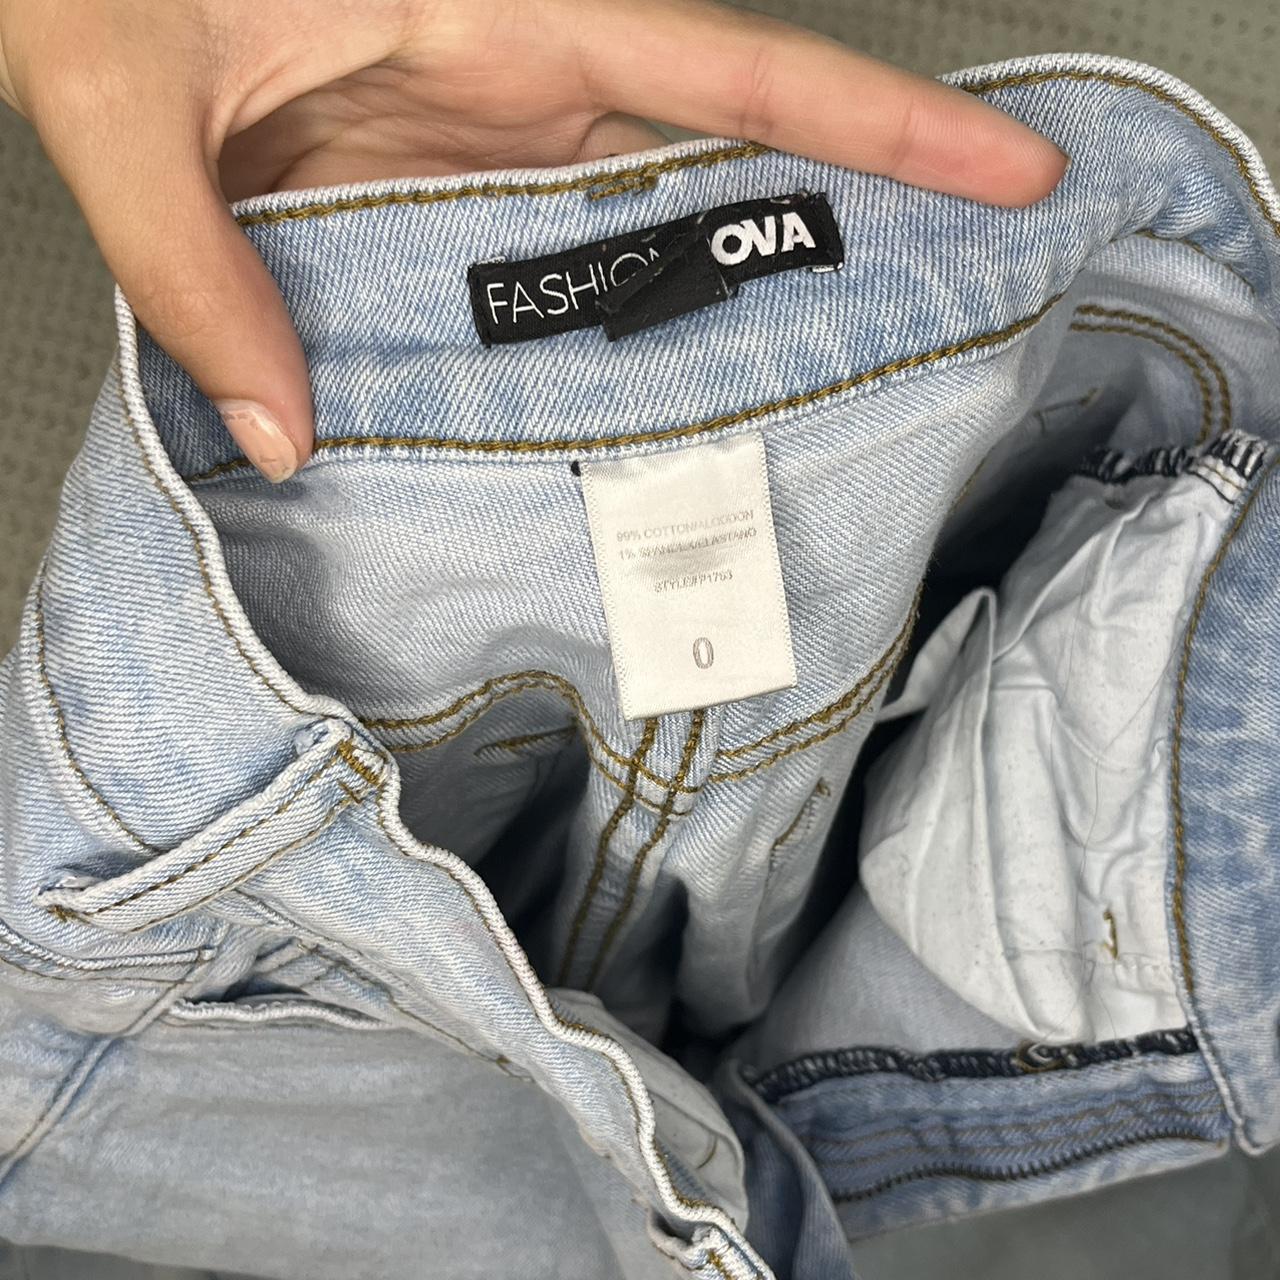 Fashion Nova 1 99 Jeans Is Real